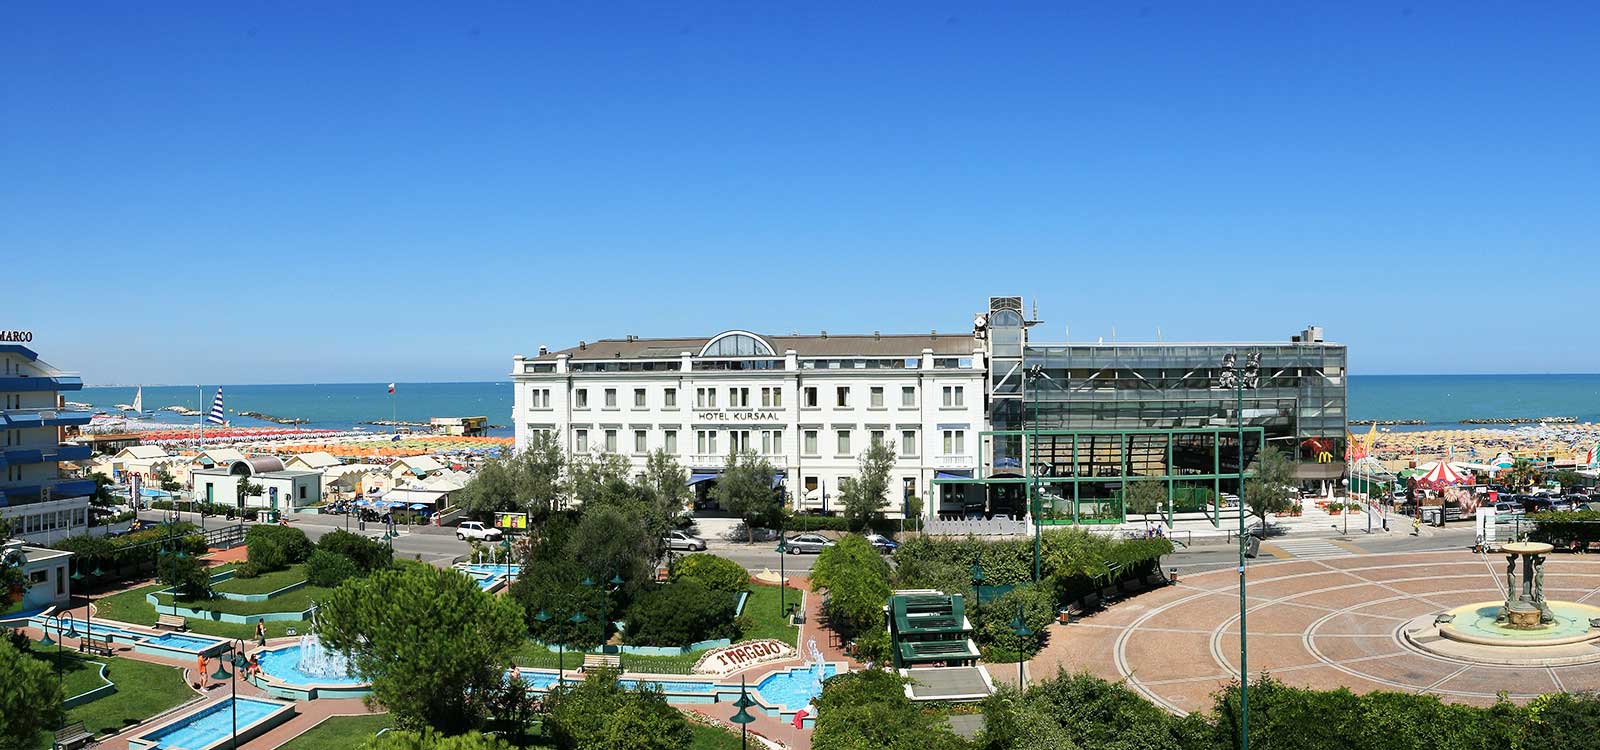 Vista panoramica dell'hotel e della piazza